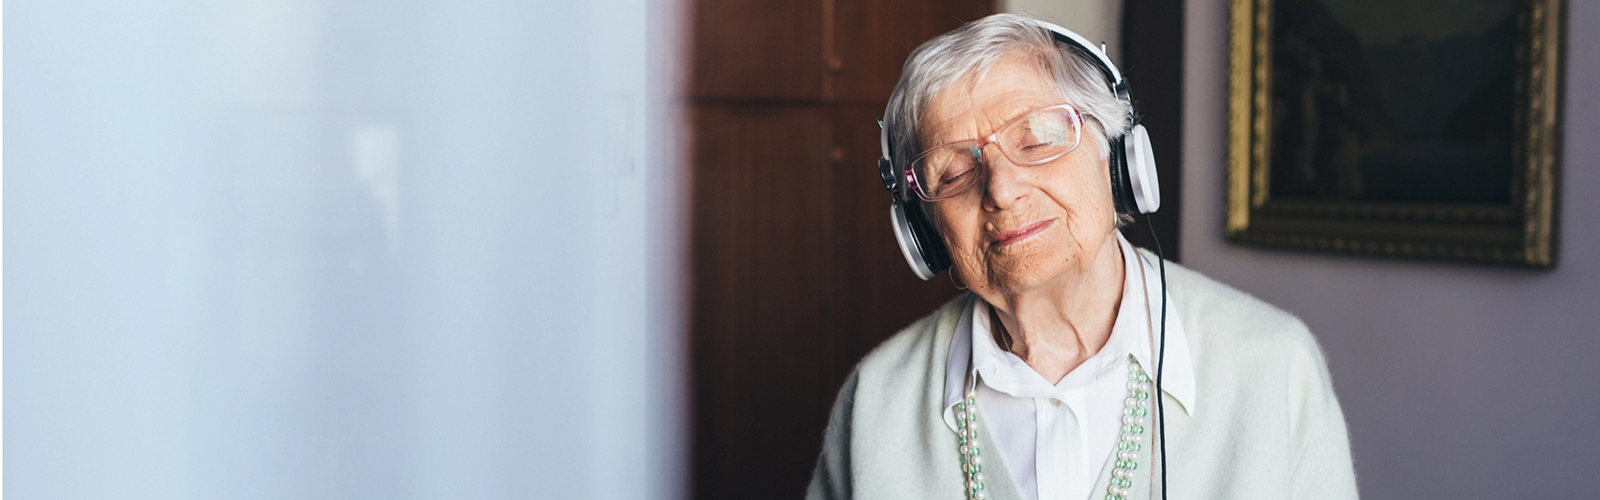 Alte Dame hört mit Kopfhörer Musik